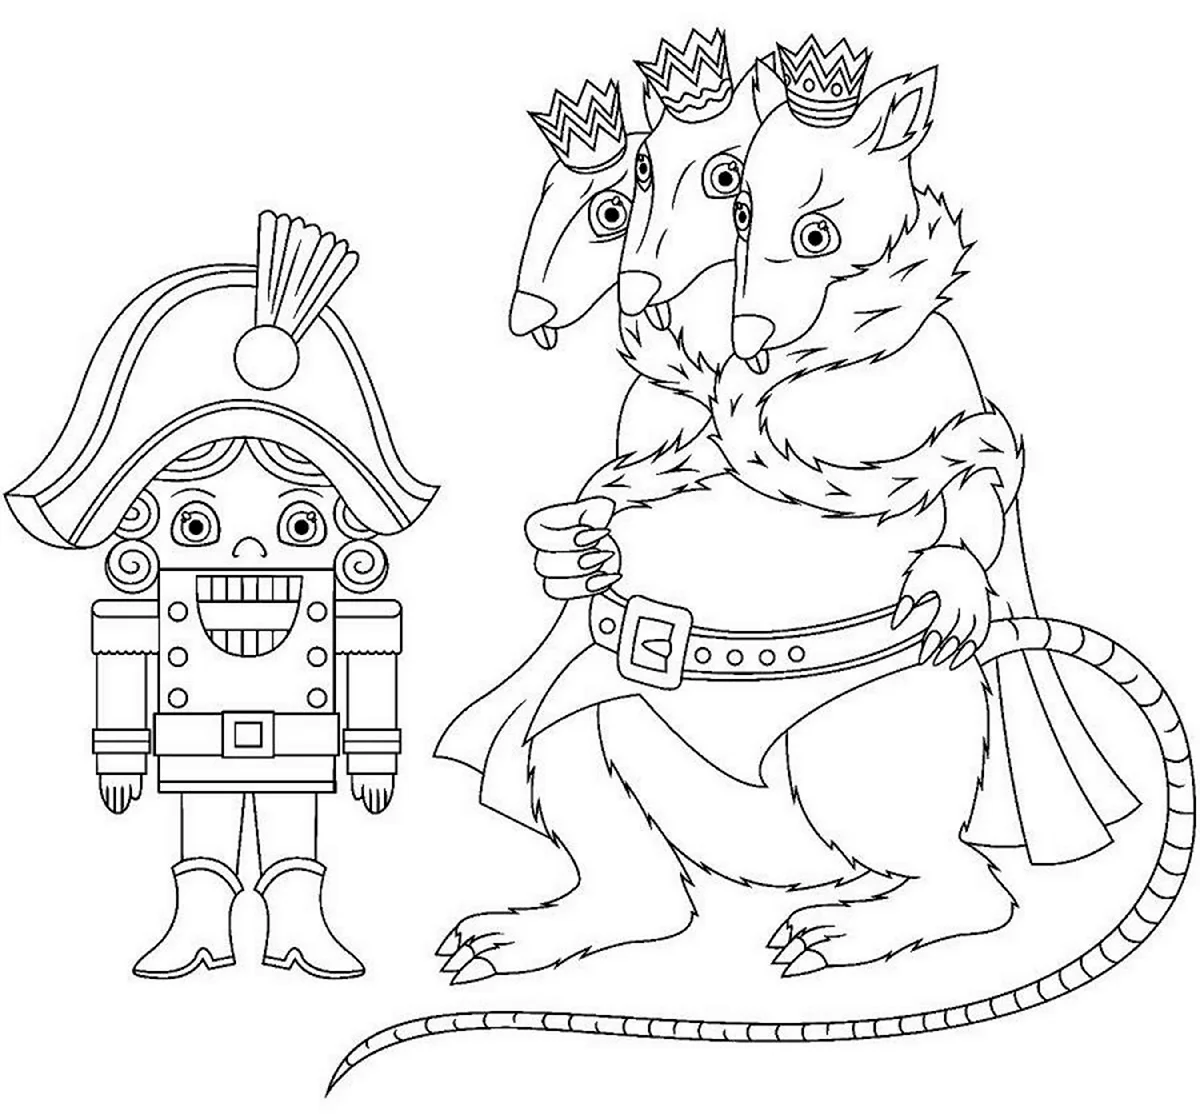 Раскраски к сказке Щелкунчик и мышиный Король. Для срисовки